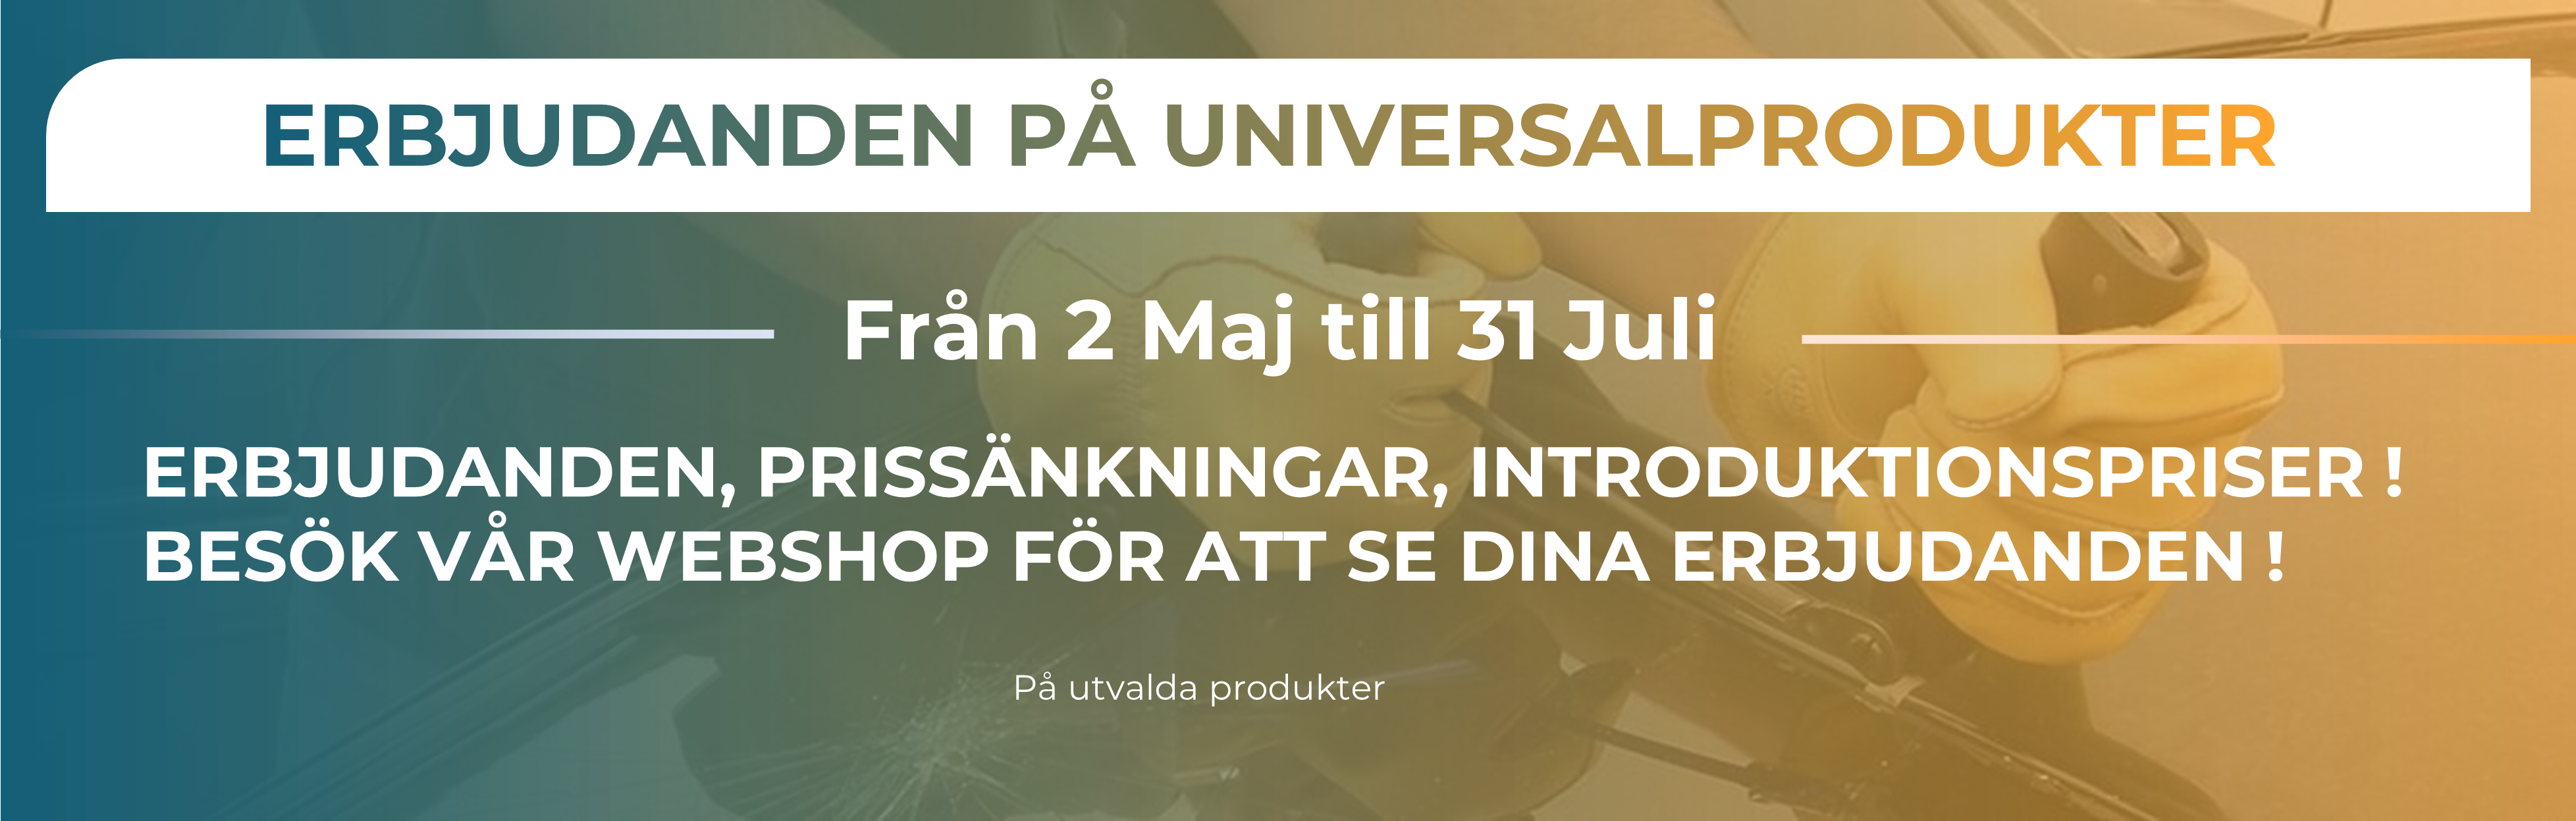 OSS BANNER PROMO Q2 Svenska.png